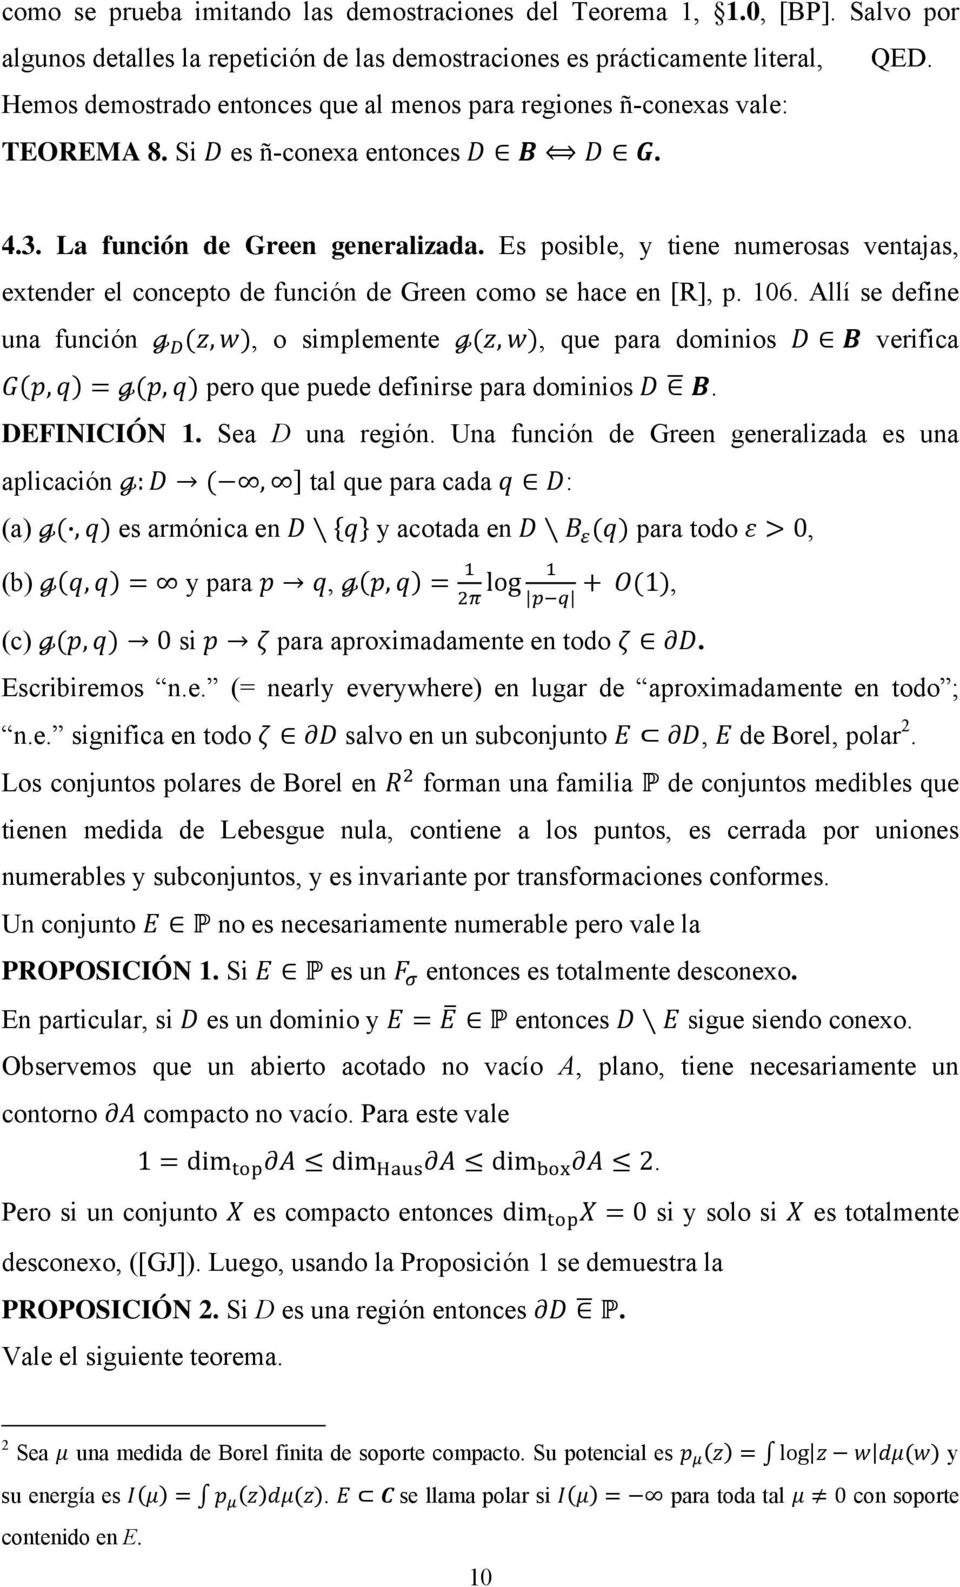 Es posible, y tiene numerosas ventajas, extender el concepto de función de Green como se hace en [R], p. 106.